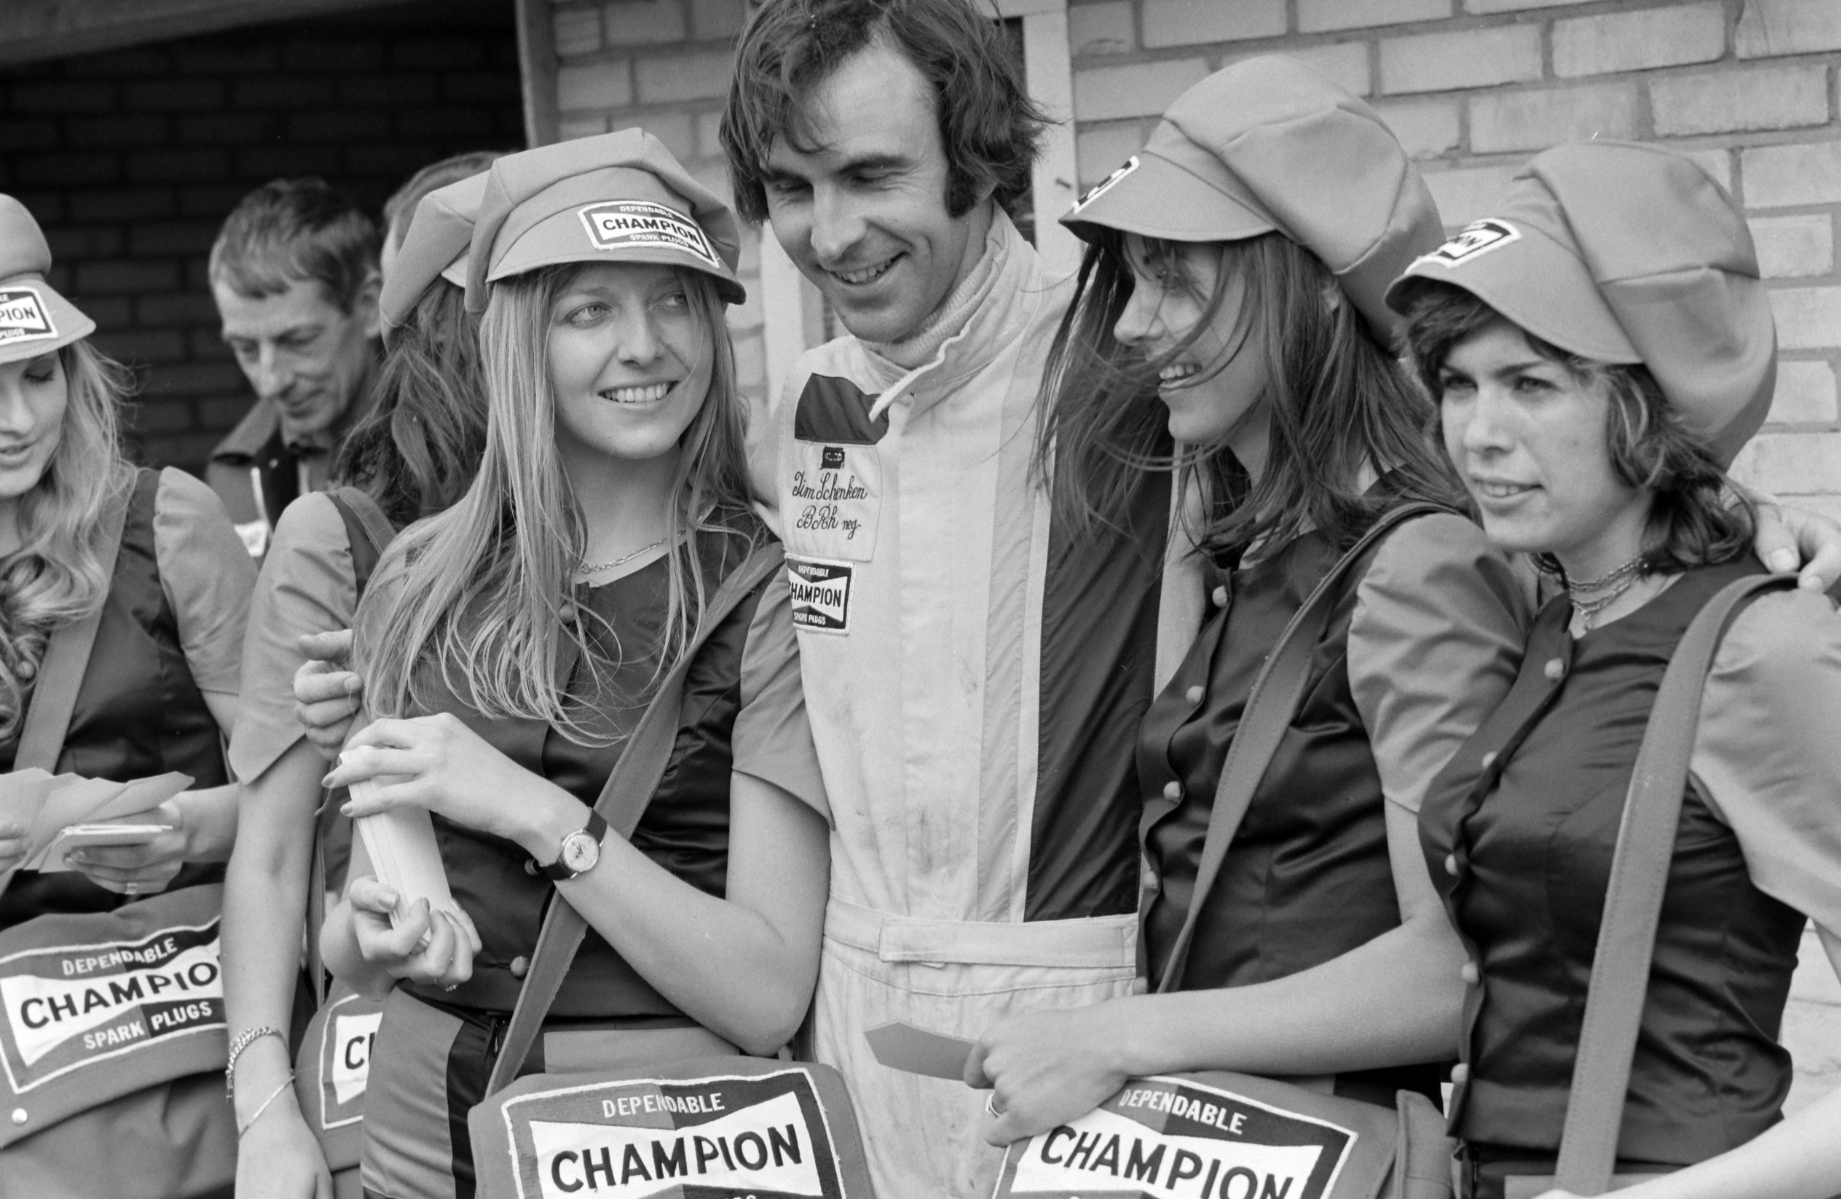 Tim Schenken and sponsors girls at the Dutch Grand Prix in Zandvoort on 20 June 1971.